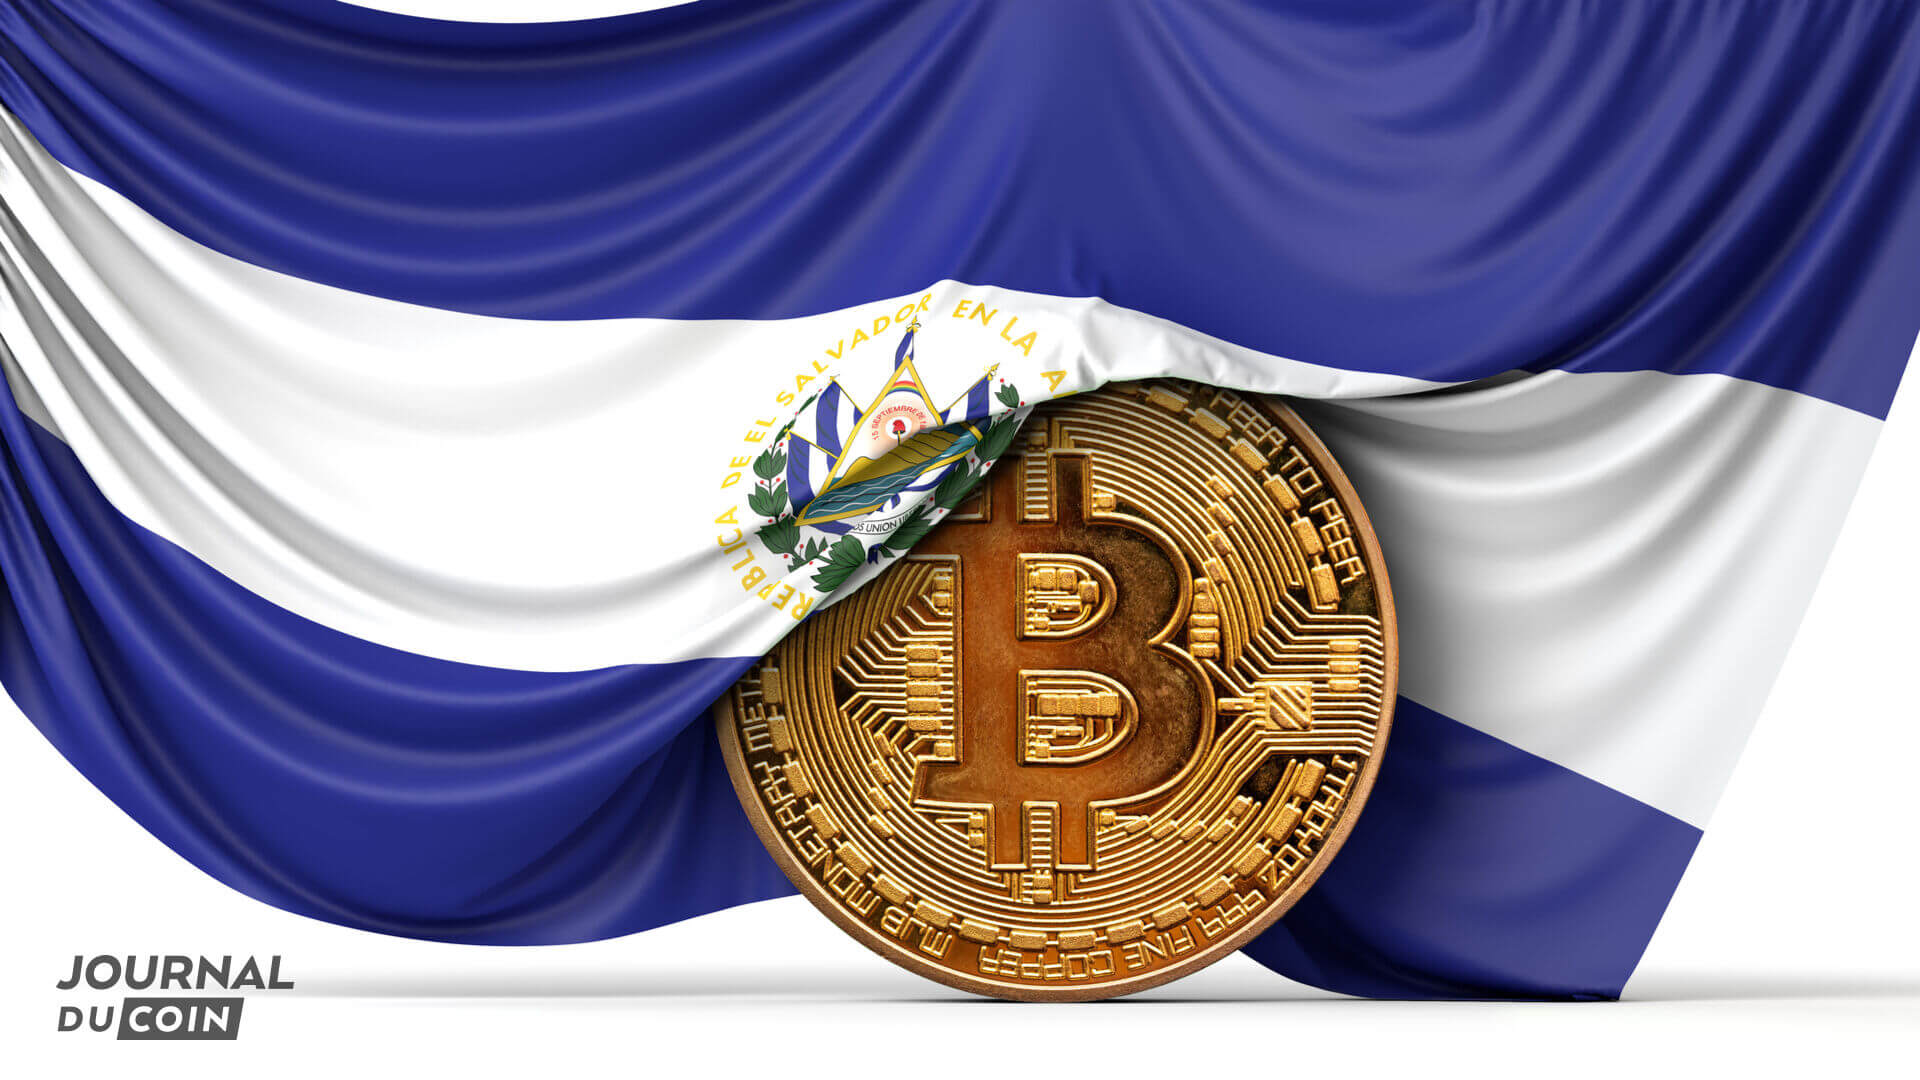 Le président du Salvador Nayib Bukele annonce que le portefeuille Bitcoin (BTC) Chivo sera disponible à partir du 7 septembre 2021